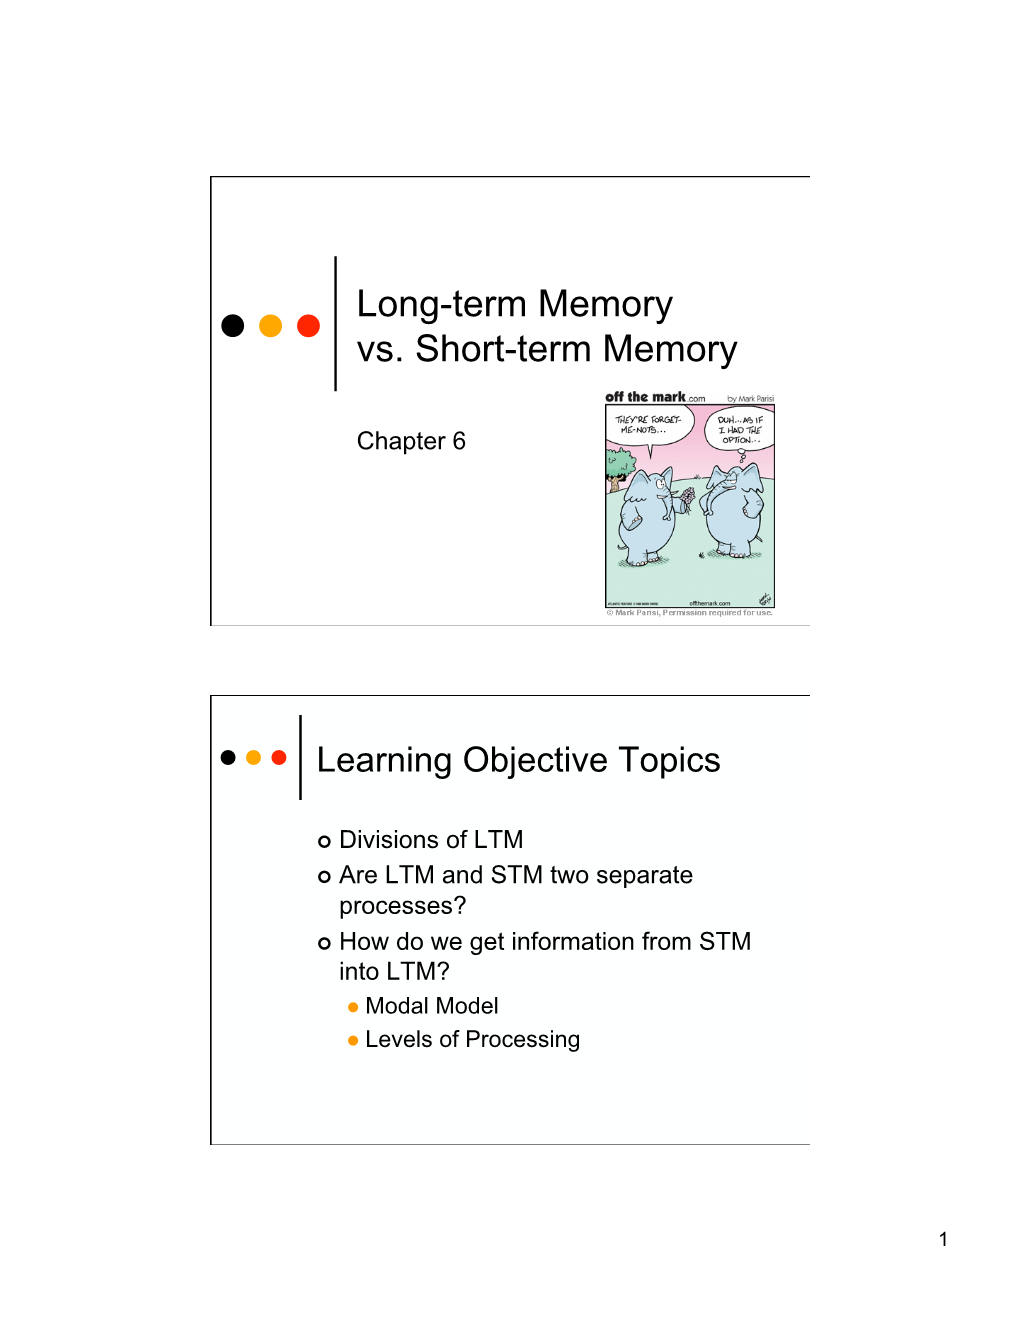 Long-Term Memory Vs. Short-Term Memory